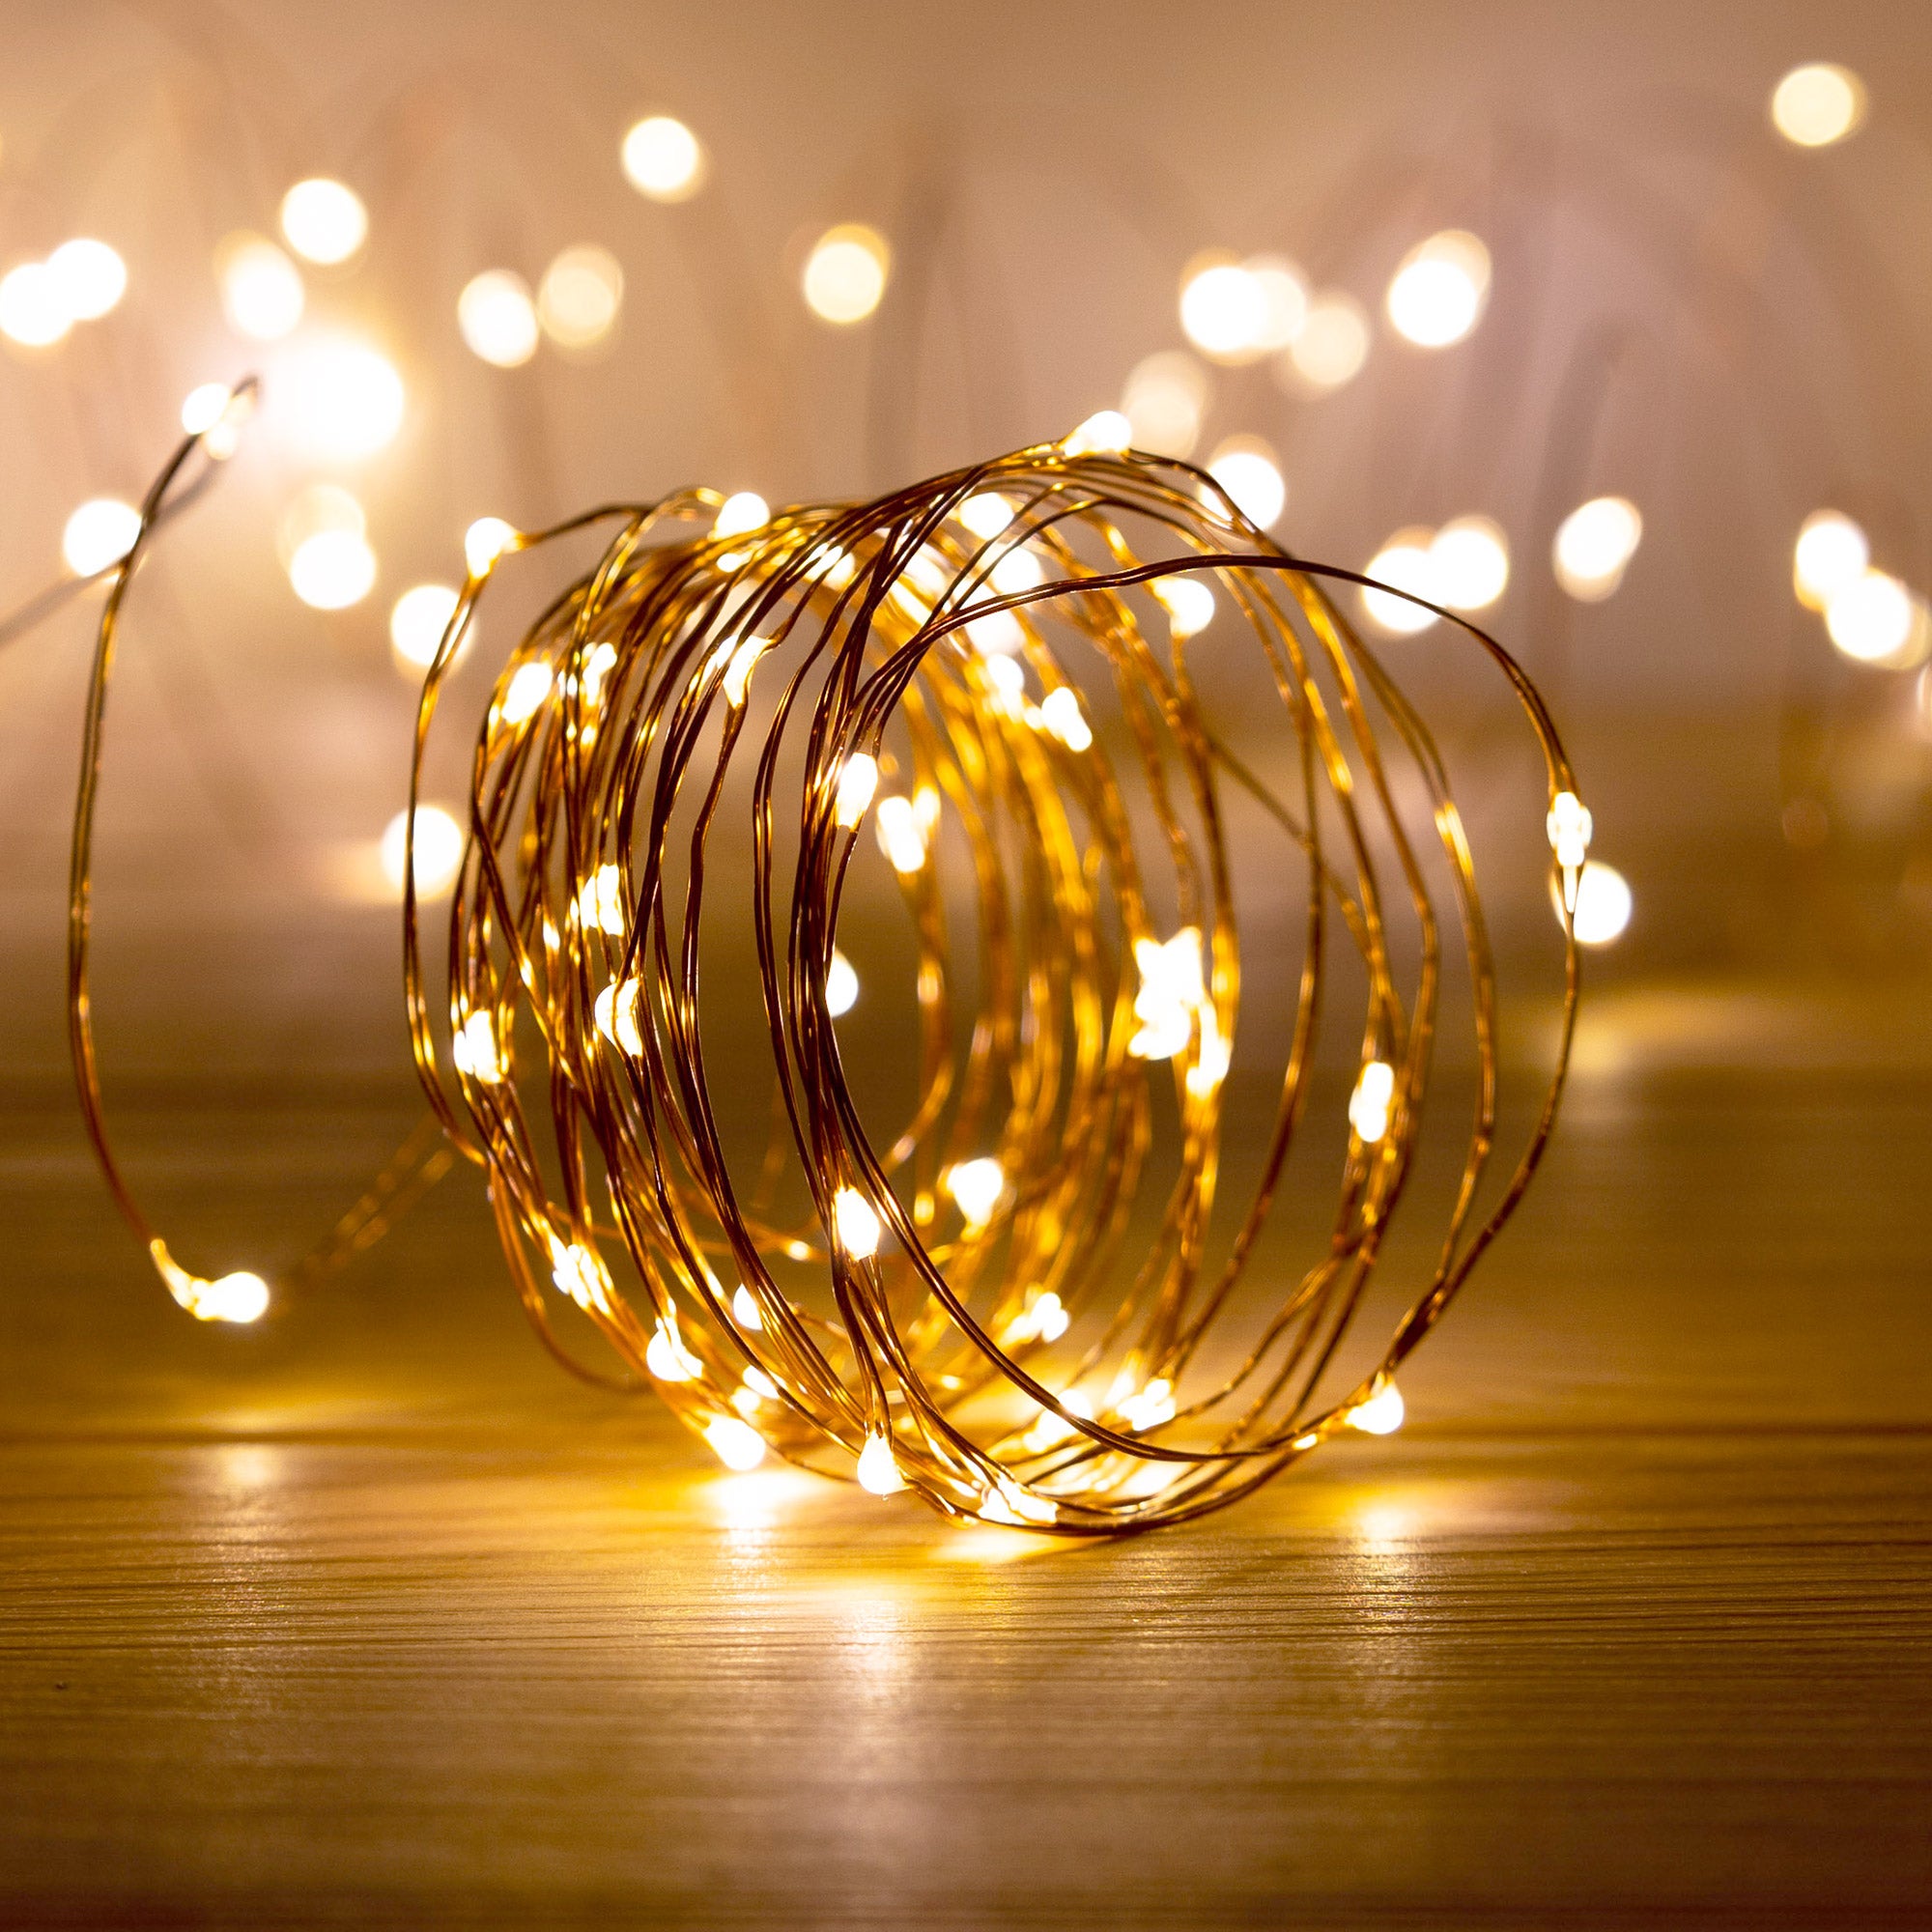 Guirlande électrique 4 m lumineuse de Noël Microled à piles blanc